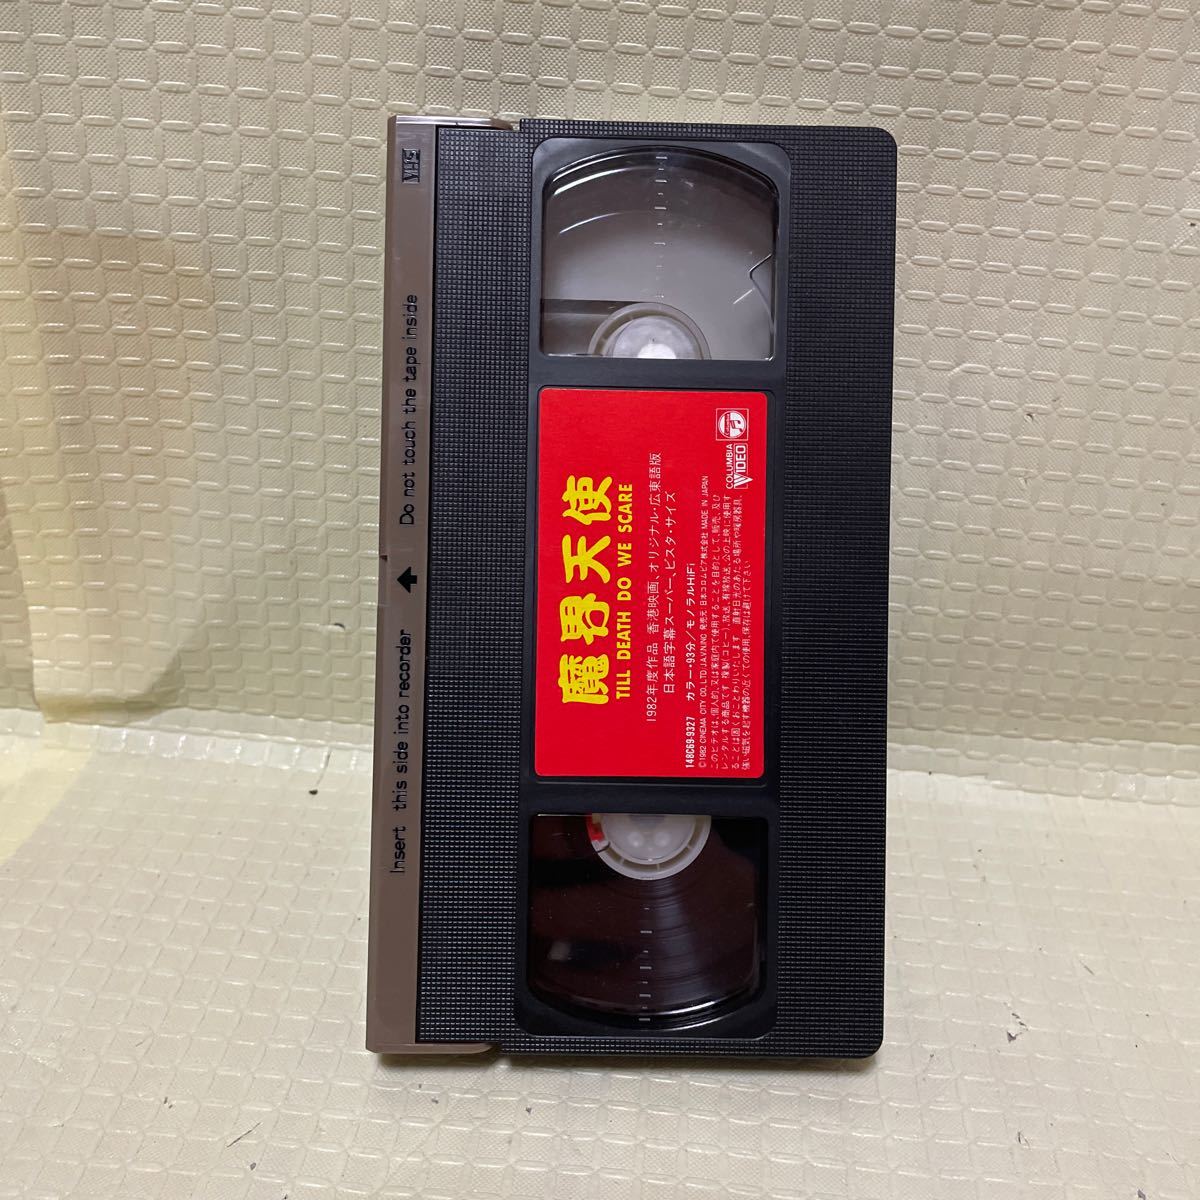 VHS 魔界天使　アラン・タム/オリビア・チェン　1982年・香港映画　ギャグ　ホラー　最後まで全て再生確認済みになります。